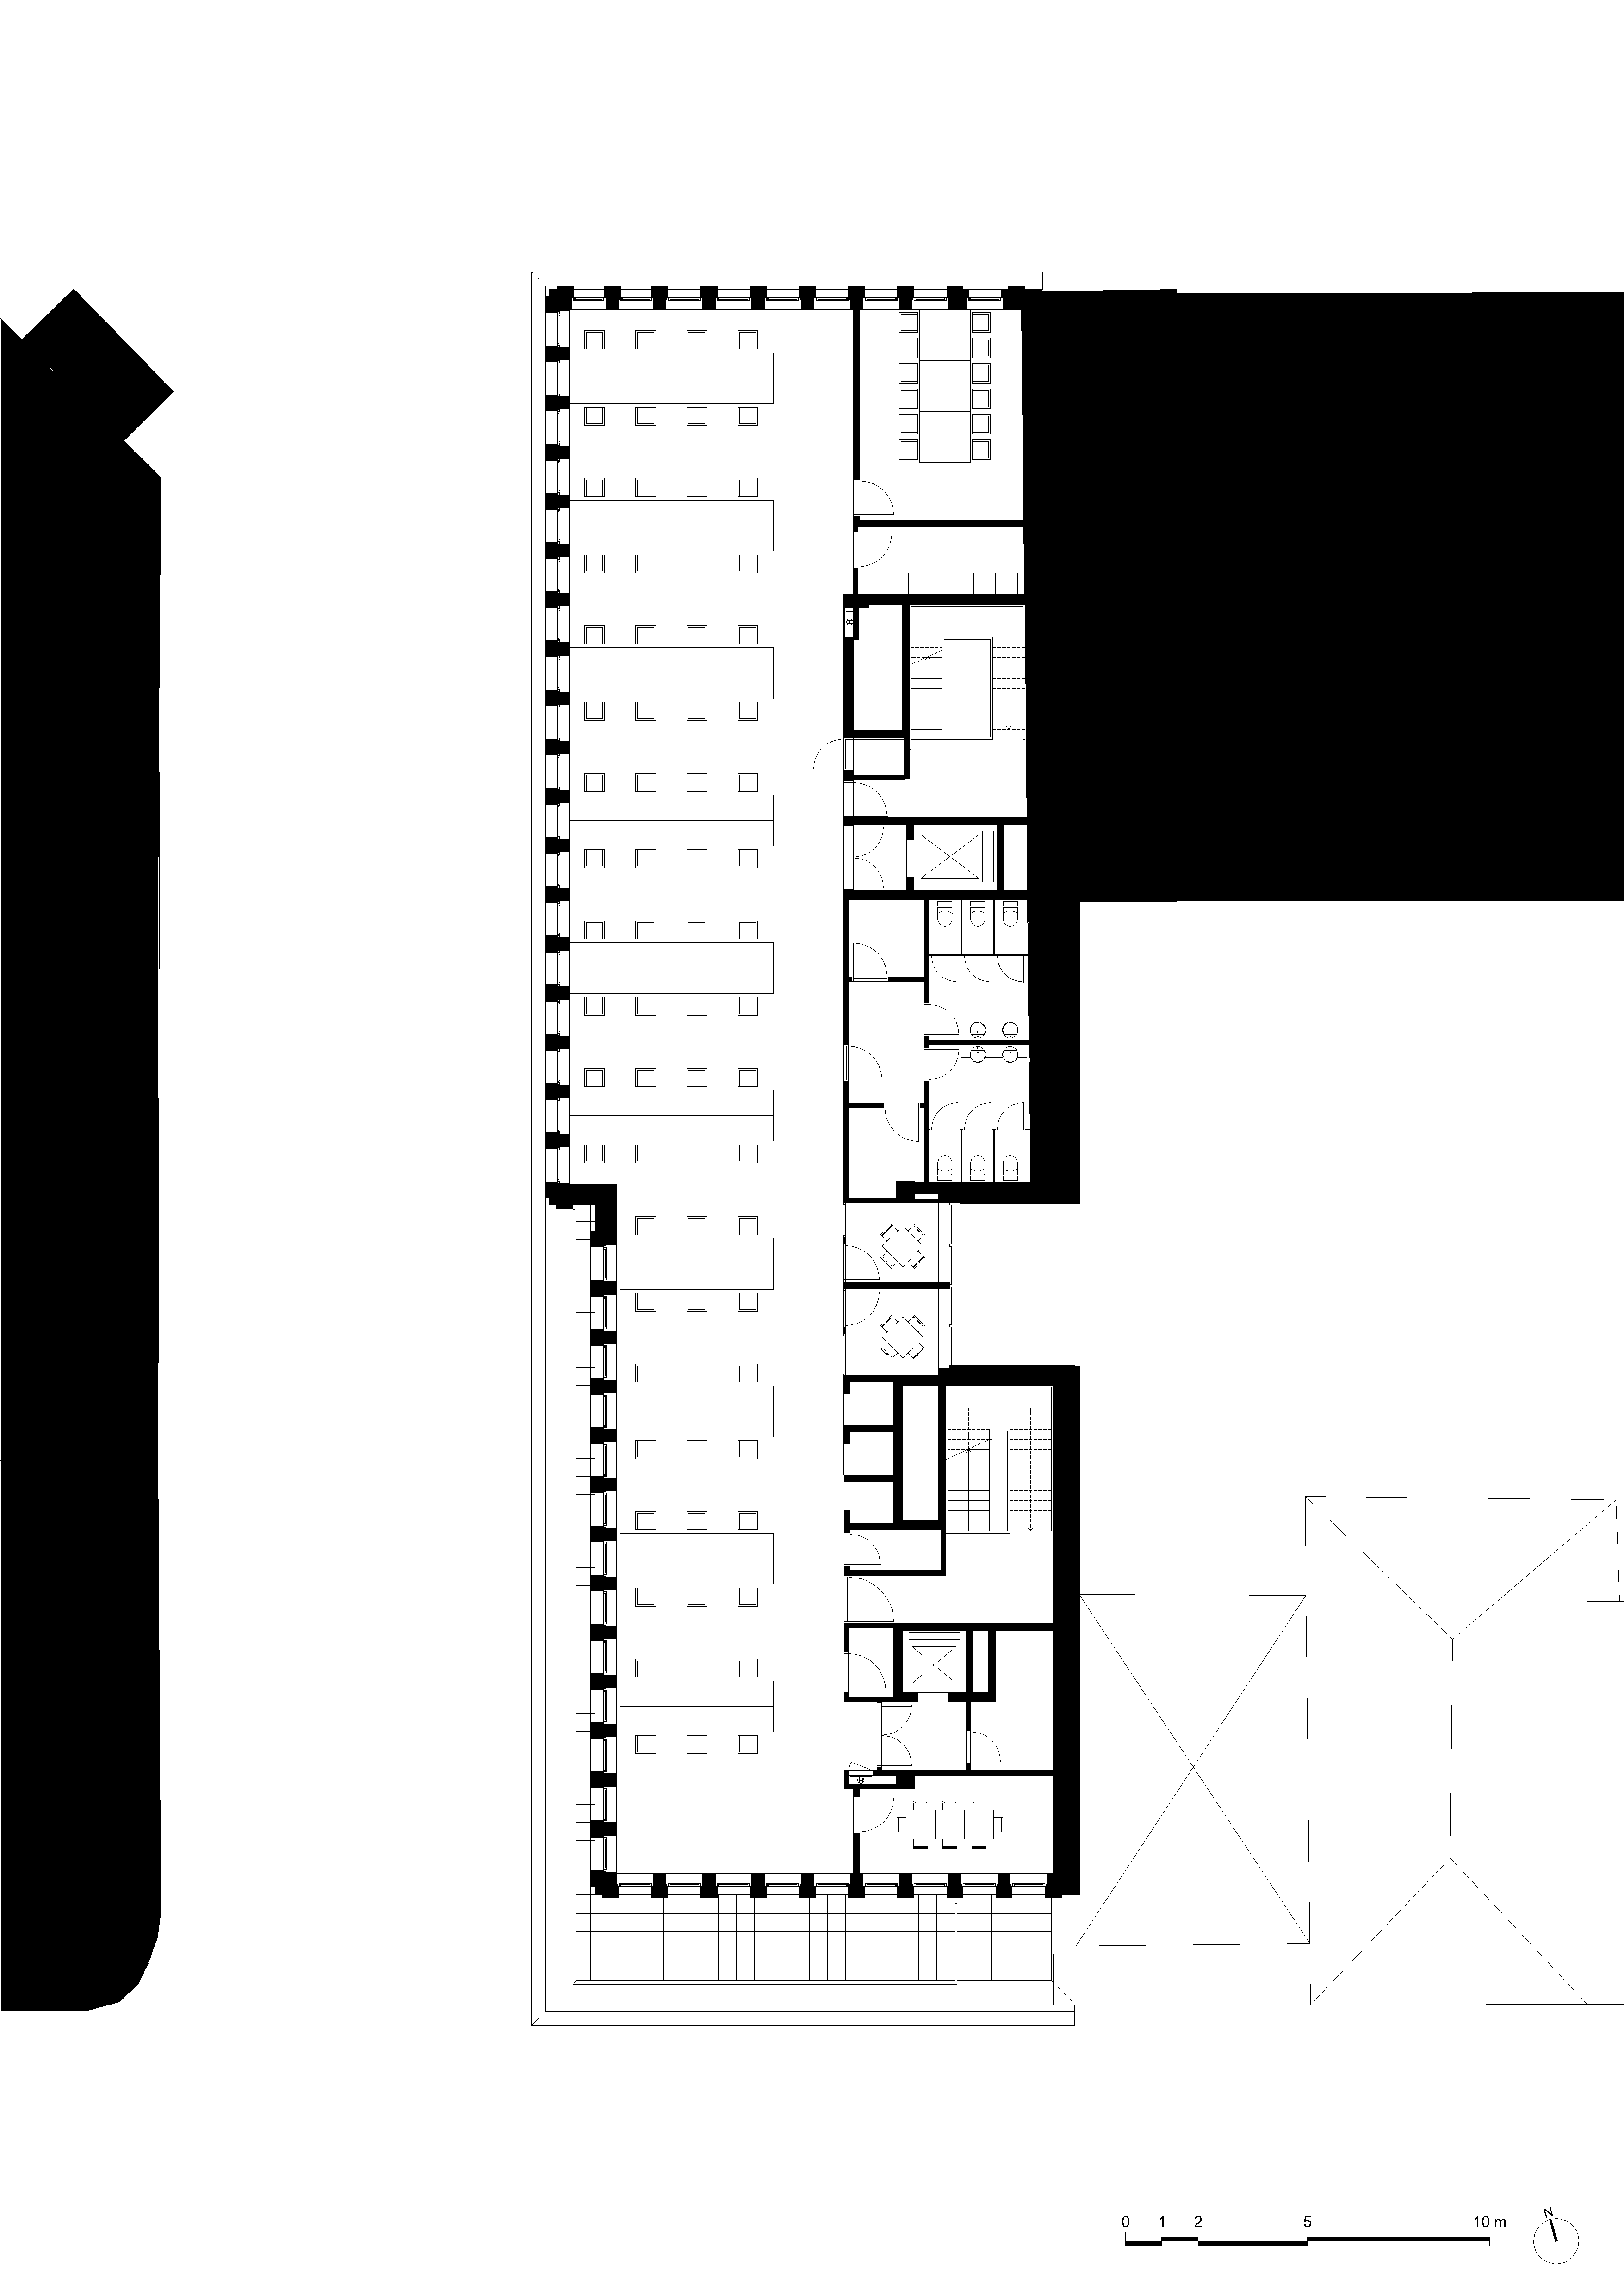 architecture-contemporaine-dockin-sambrinvest-bureau-innovation-charleroi-brique-émaillée-plan-sixième-étage